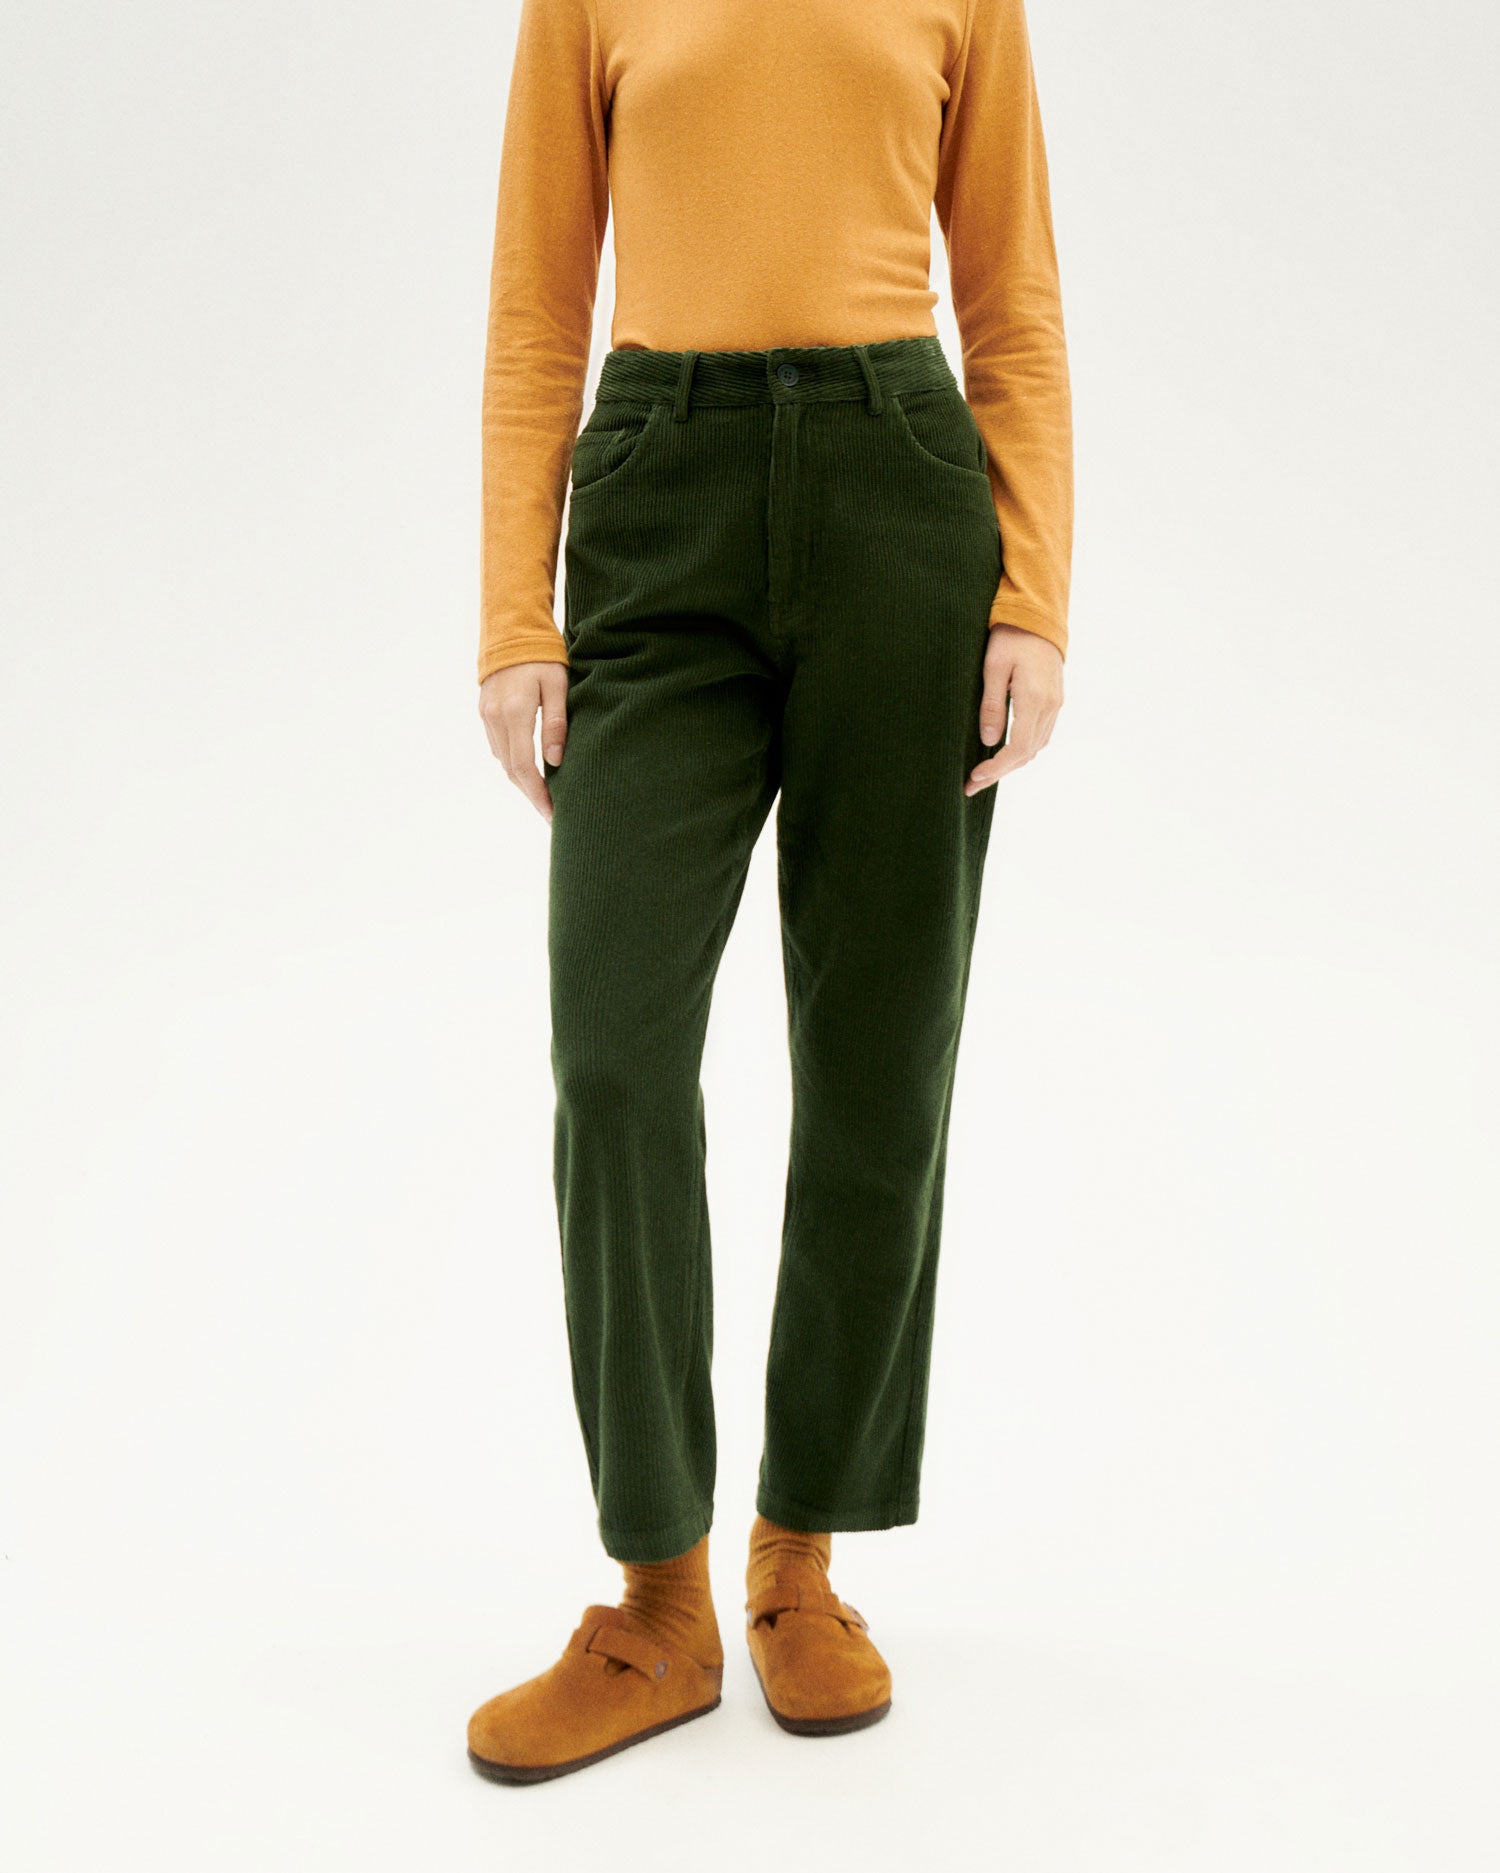 Nele Corduroy MU organic cotton | pants green Thinking woman